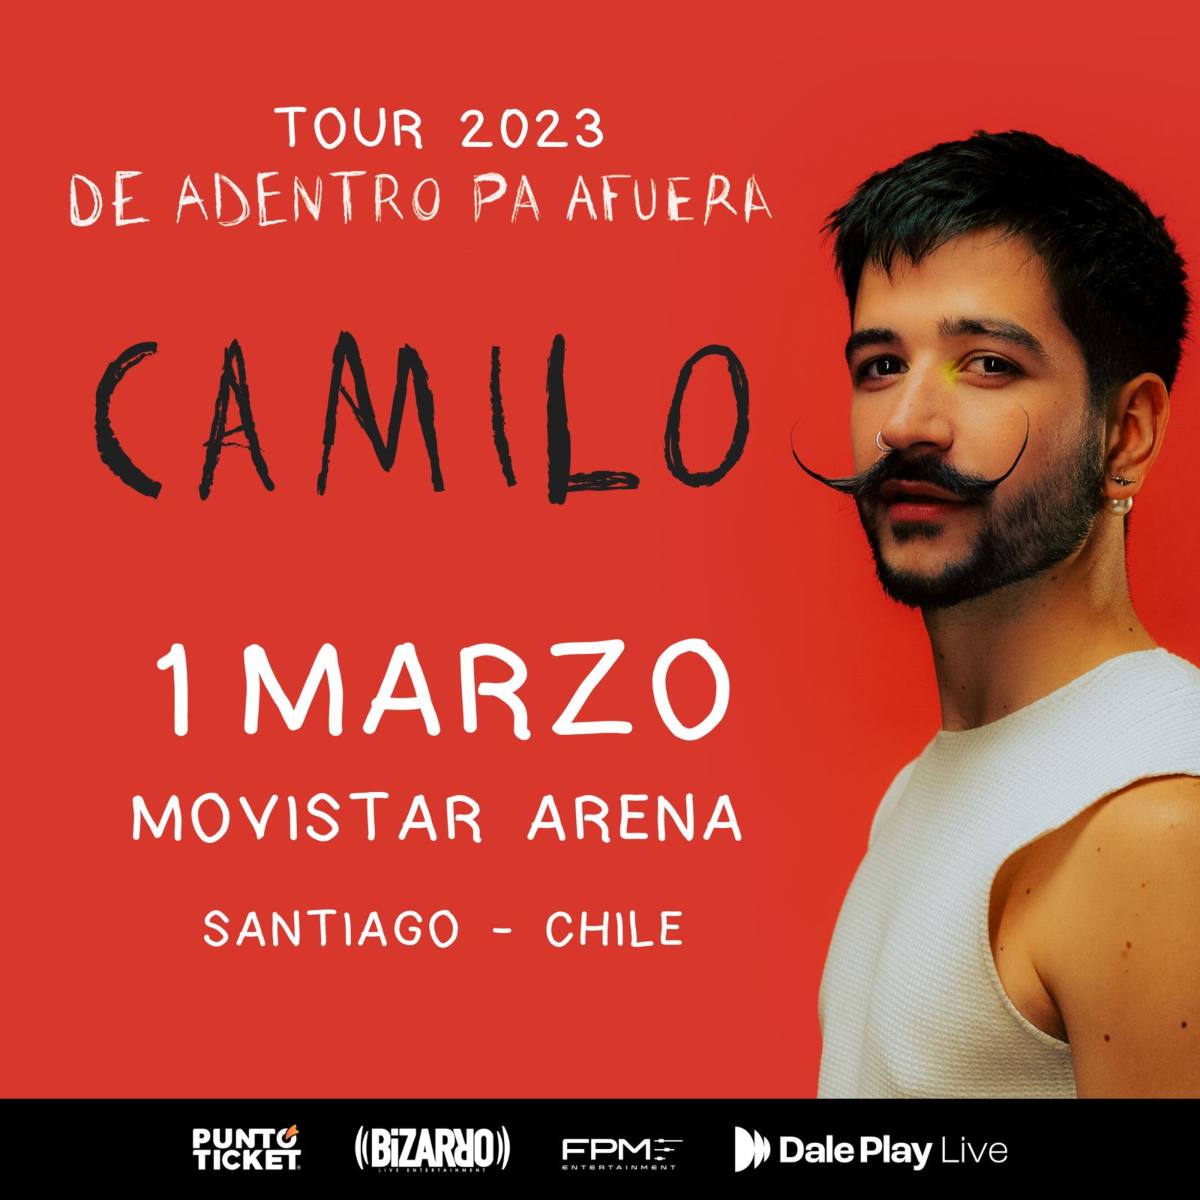 Camilo anuncia concierto en Chile Fecha, lugar y valor de entradas — FMDOS